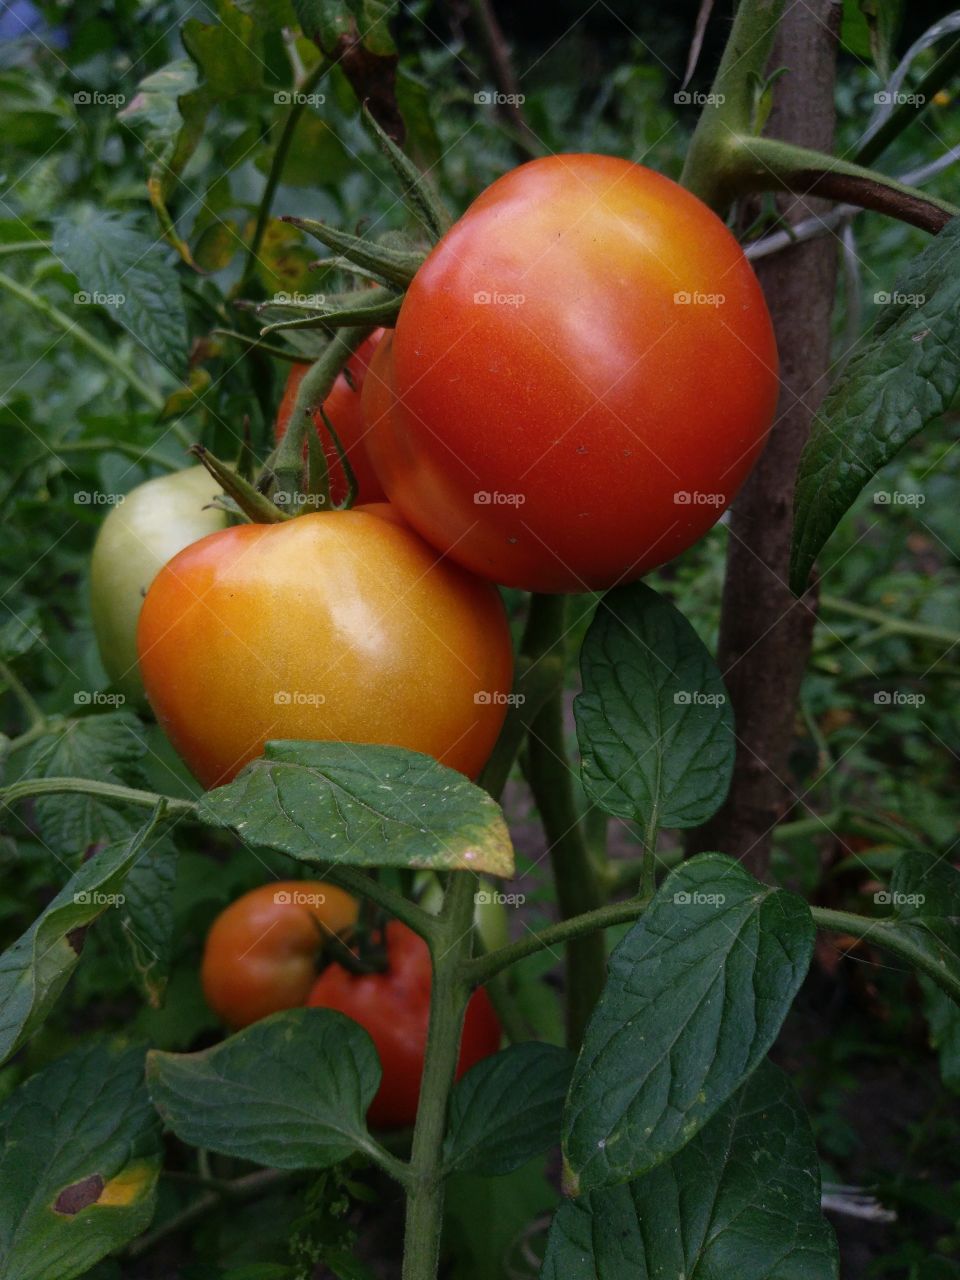 tomatoes growing in garden